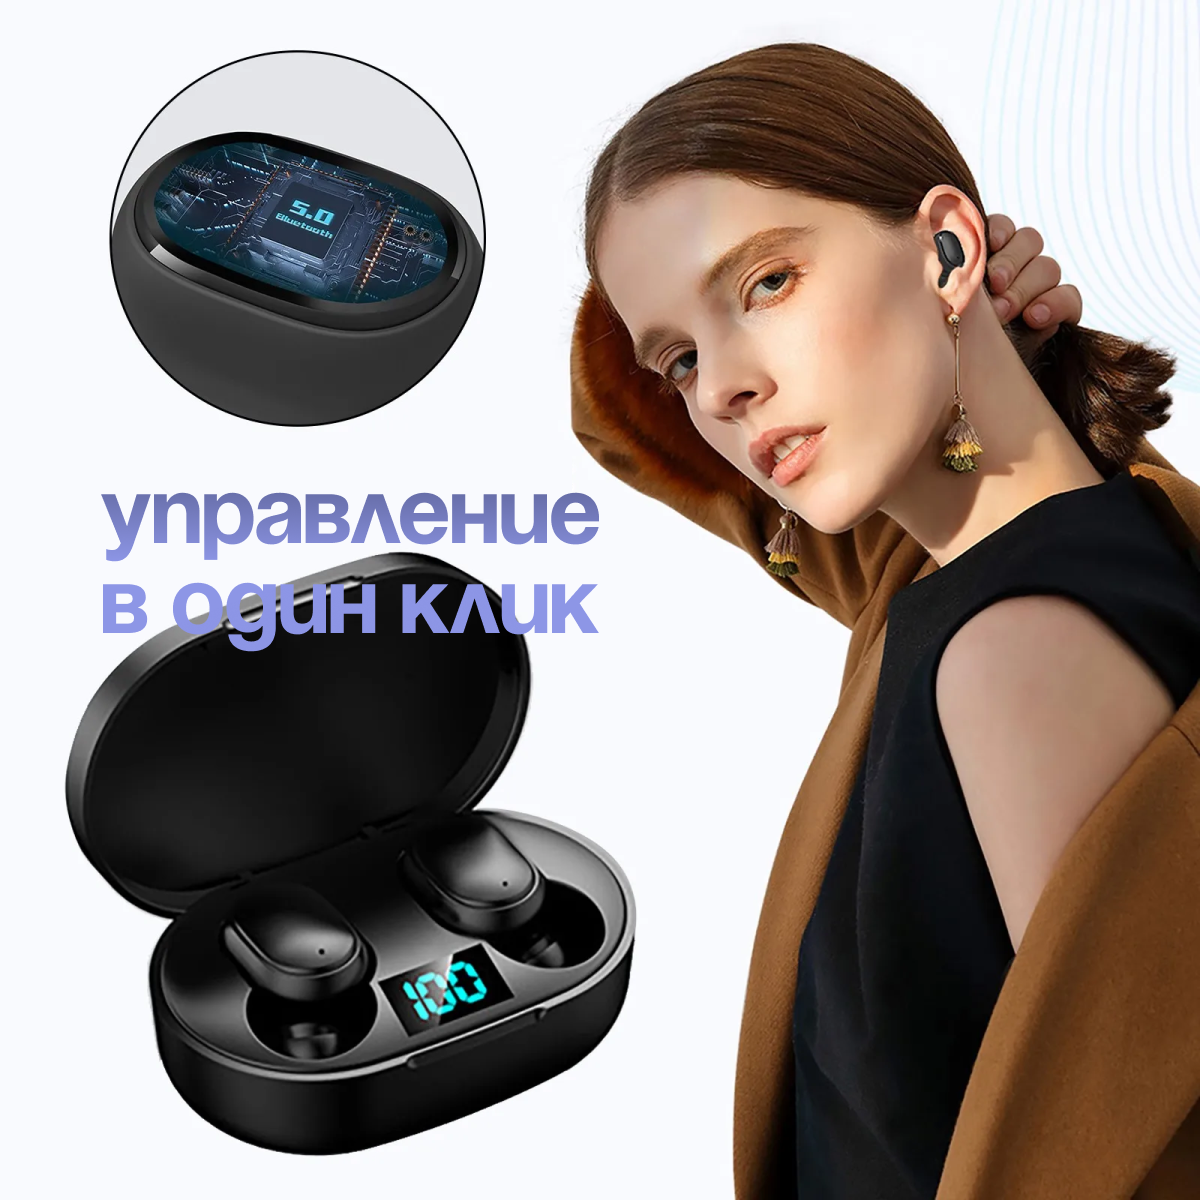 Беспроводные наушники с микрофоном, с шумоподавлением, черные , через Bluetooth E6S True Wireless Headset V5.1. Водонепроницаемость.